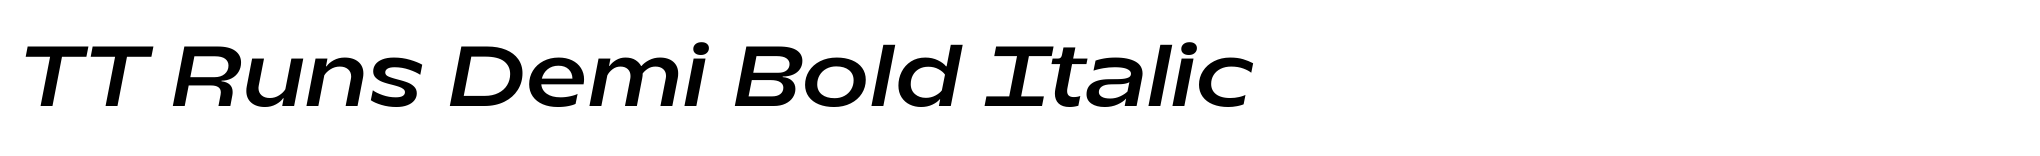 TT Runs Demi Bold Italic image